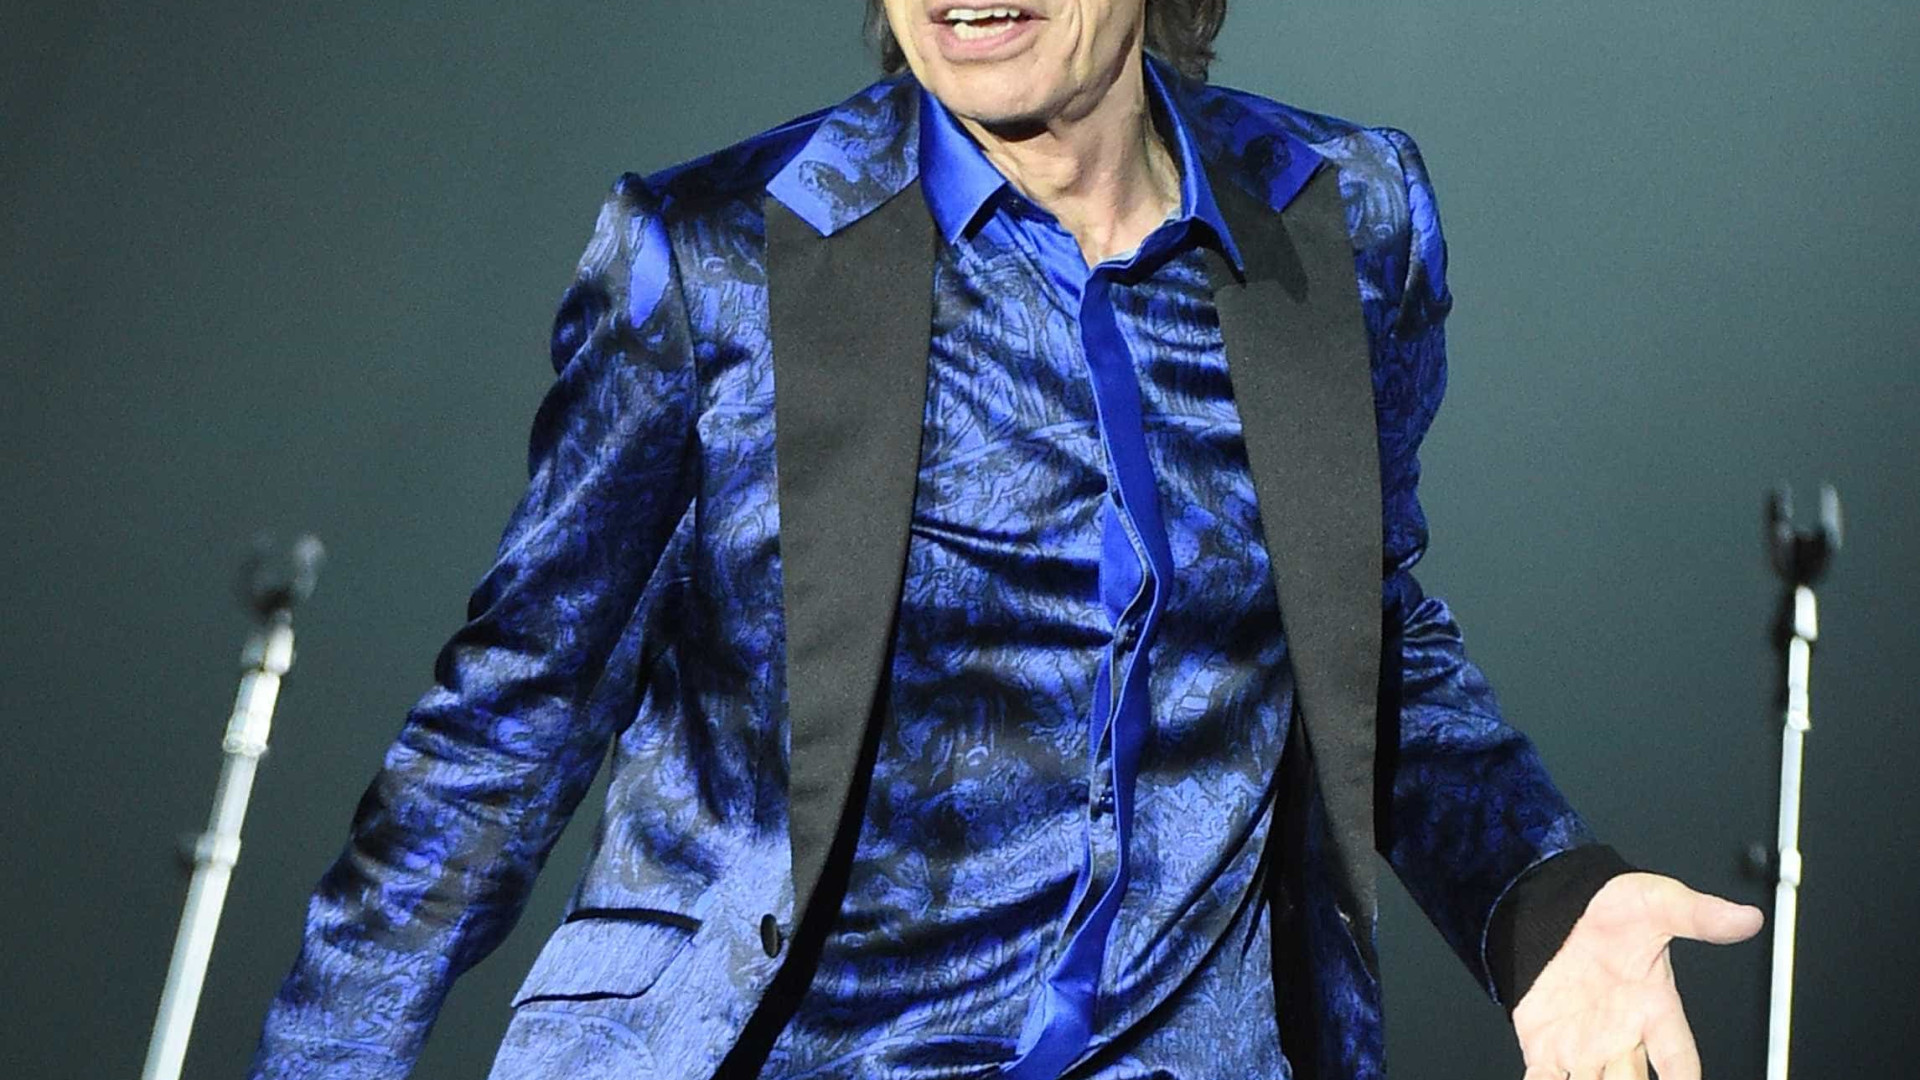 O rei do rock, Mick Jagger completa 73 anos